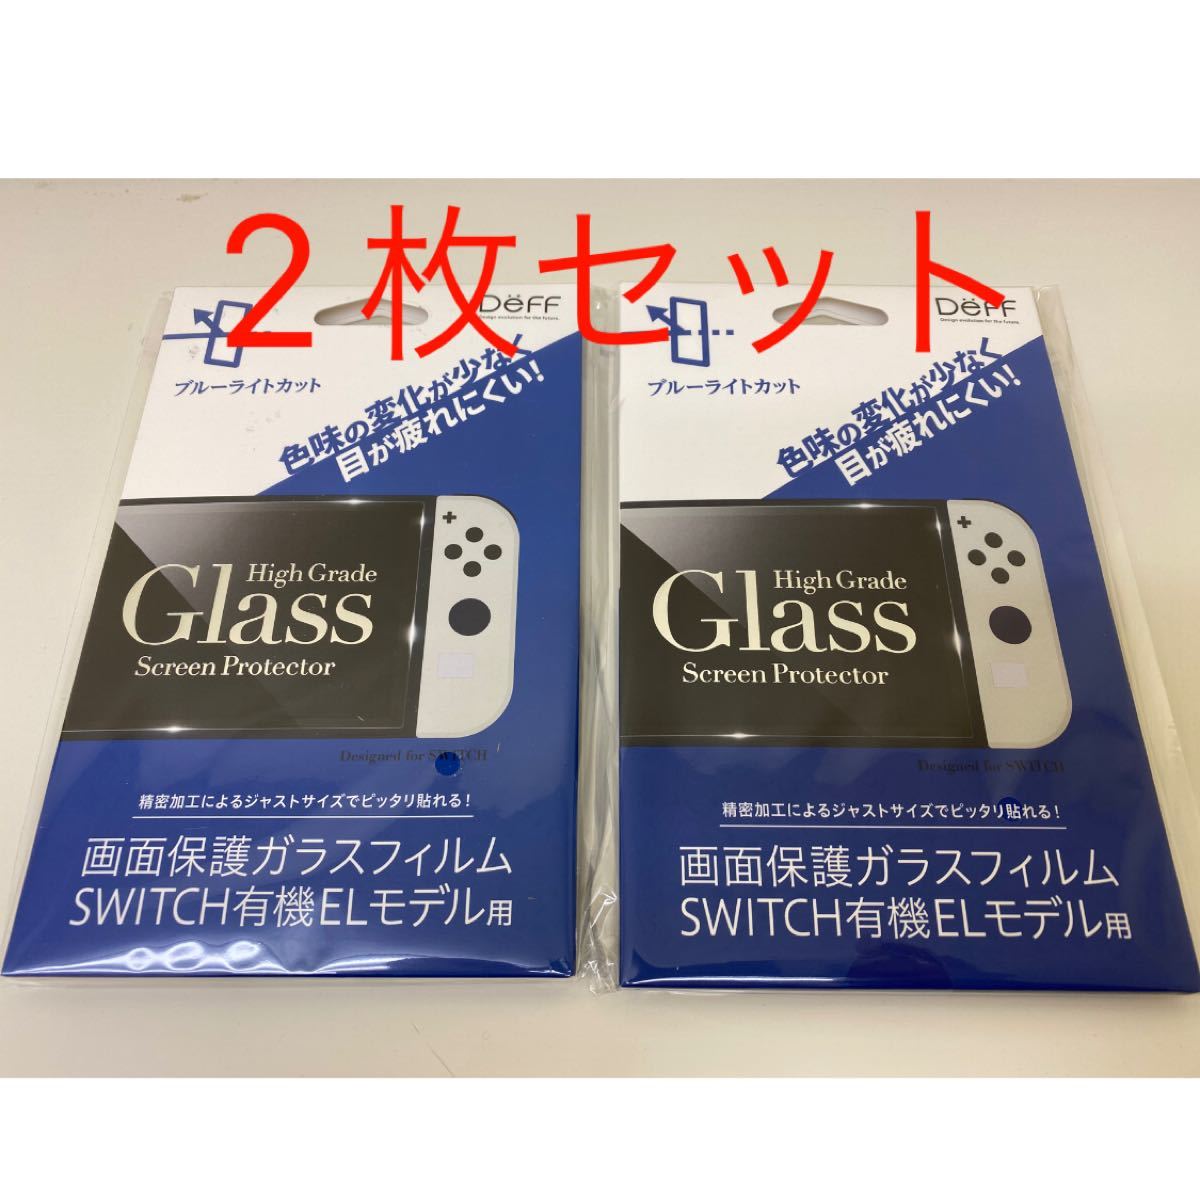 Nintendo Switch 有機 EL モデル用 画面保護 ガラスフィルム 2組セット